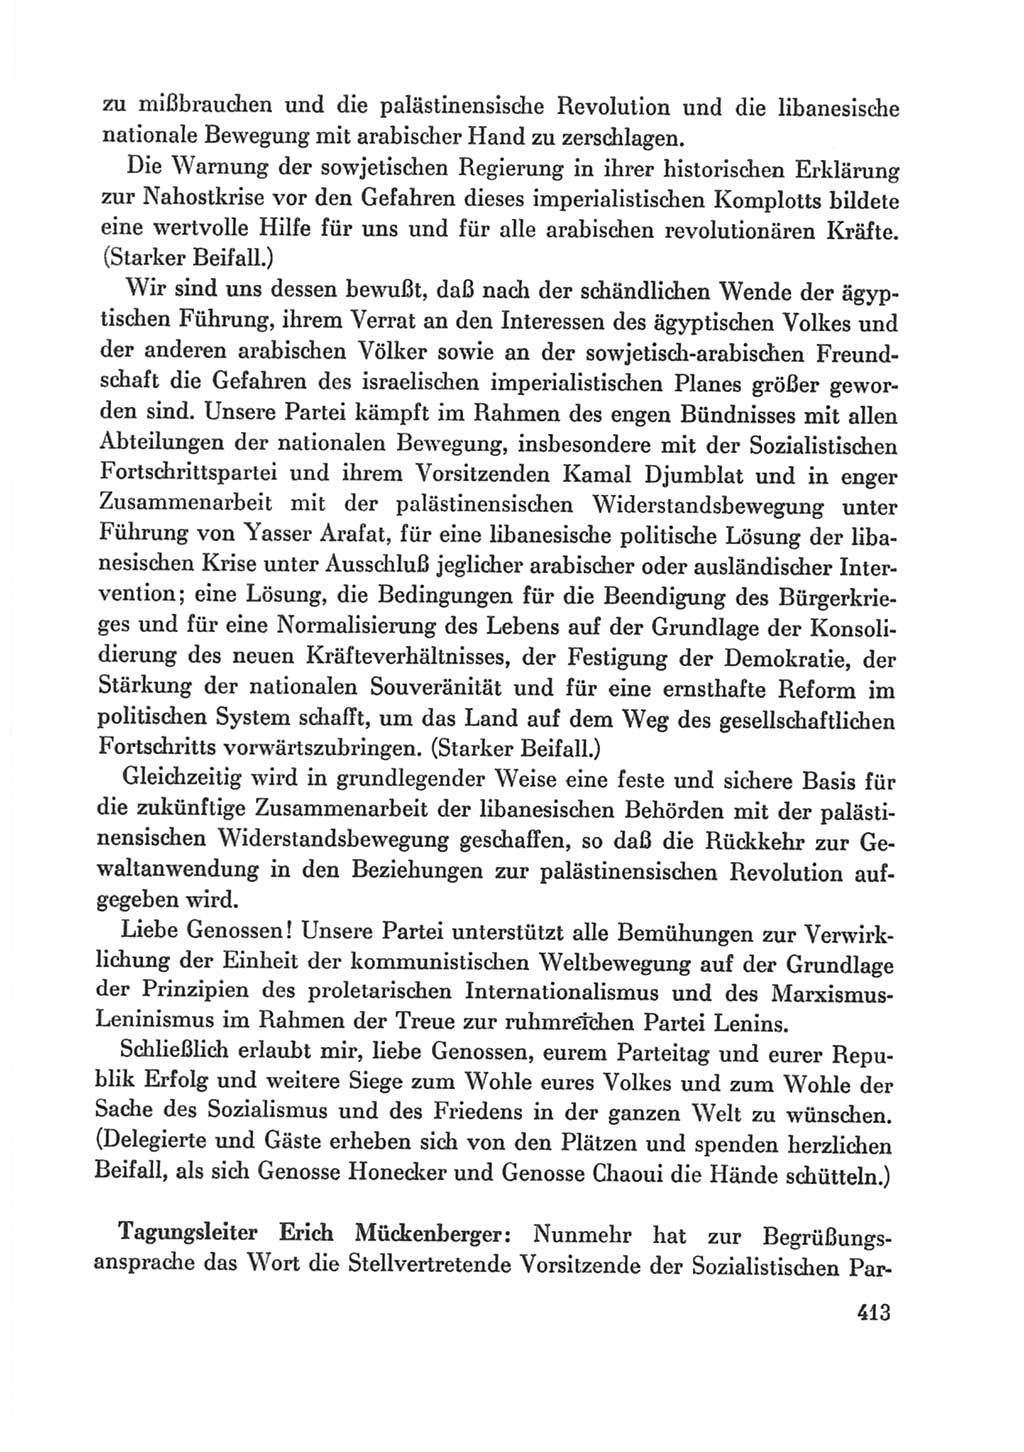 Protokoll der Verhandlungen des Ⅸ. Parteitages der Sozialistischen Einheitspartei Deutschlands (SED) [Deutsche Demokratische Republik (DDR)] 1976, Band 1, Seite 413 (Prot. Verh. Ⅸ. PT SED DDR 1976, Bd. 1, S. 413)